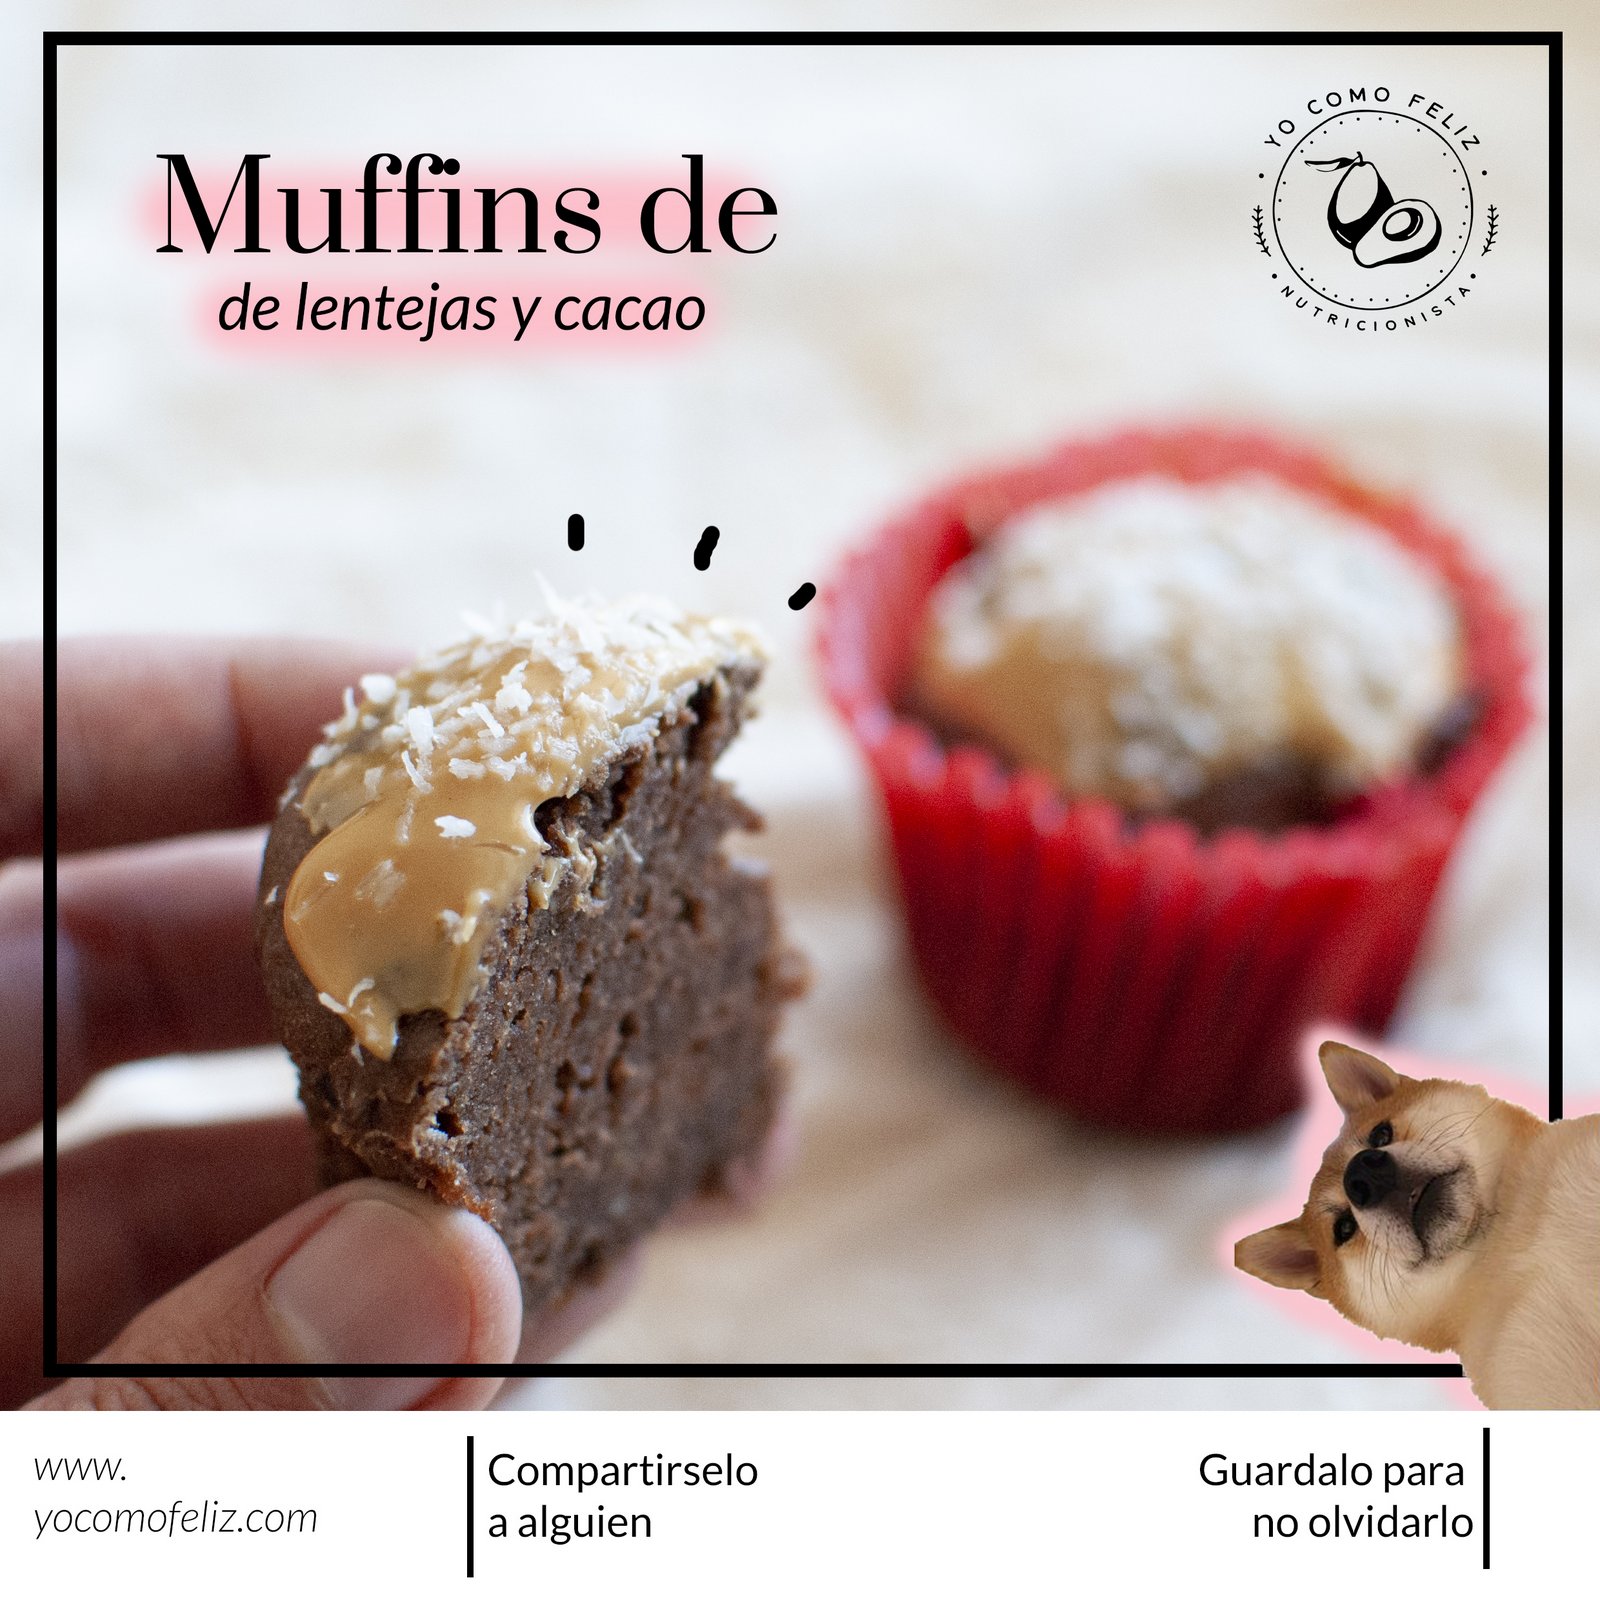 Muffins de lentejas y cacao